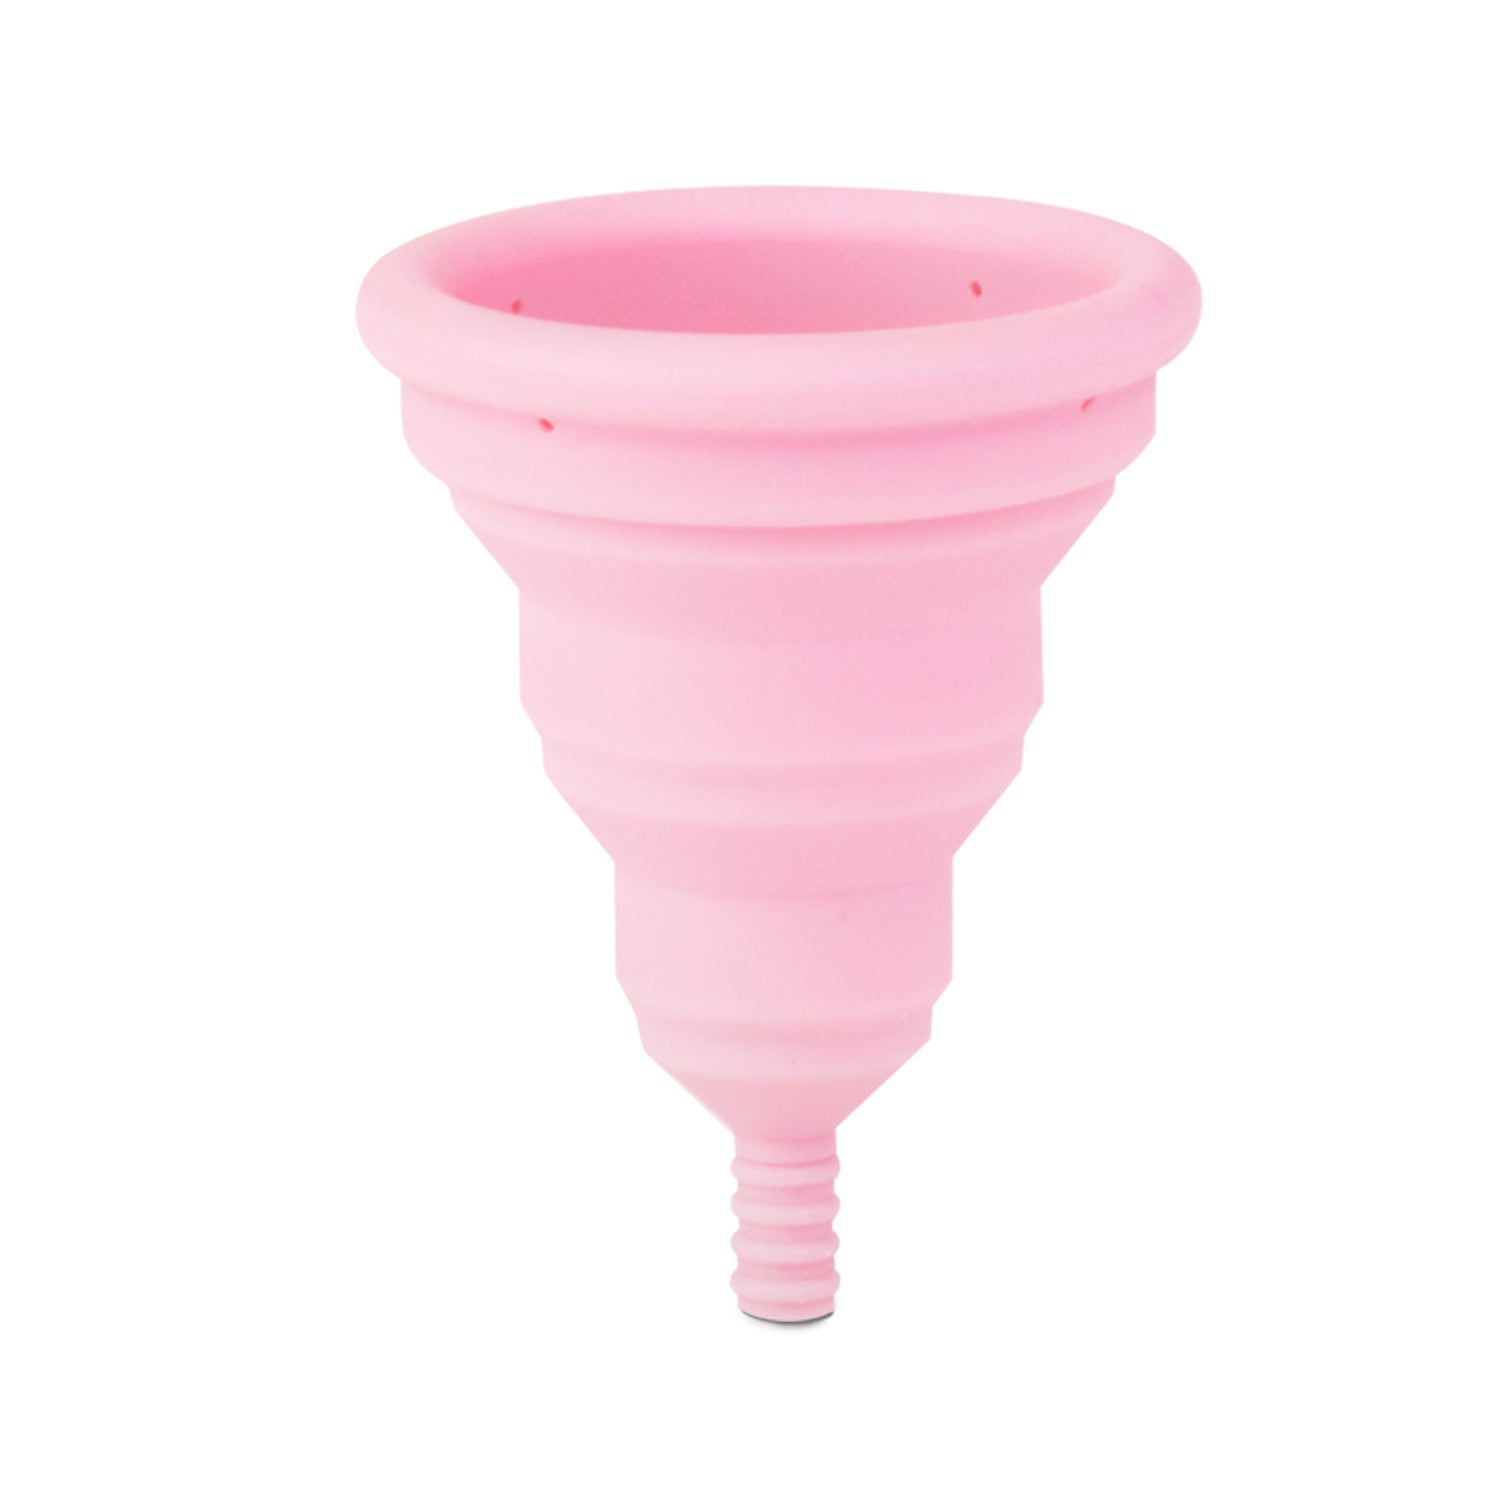 Lily Cup Compact menstrualna čašica A 2